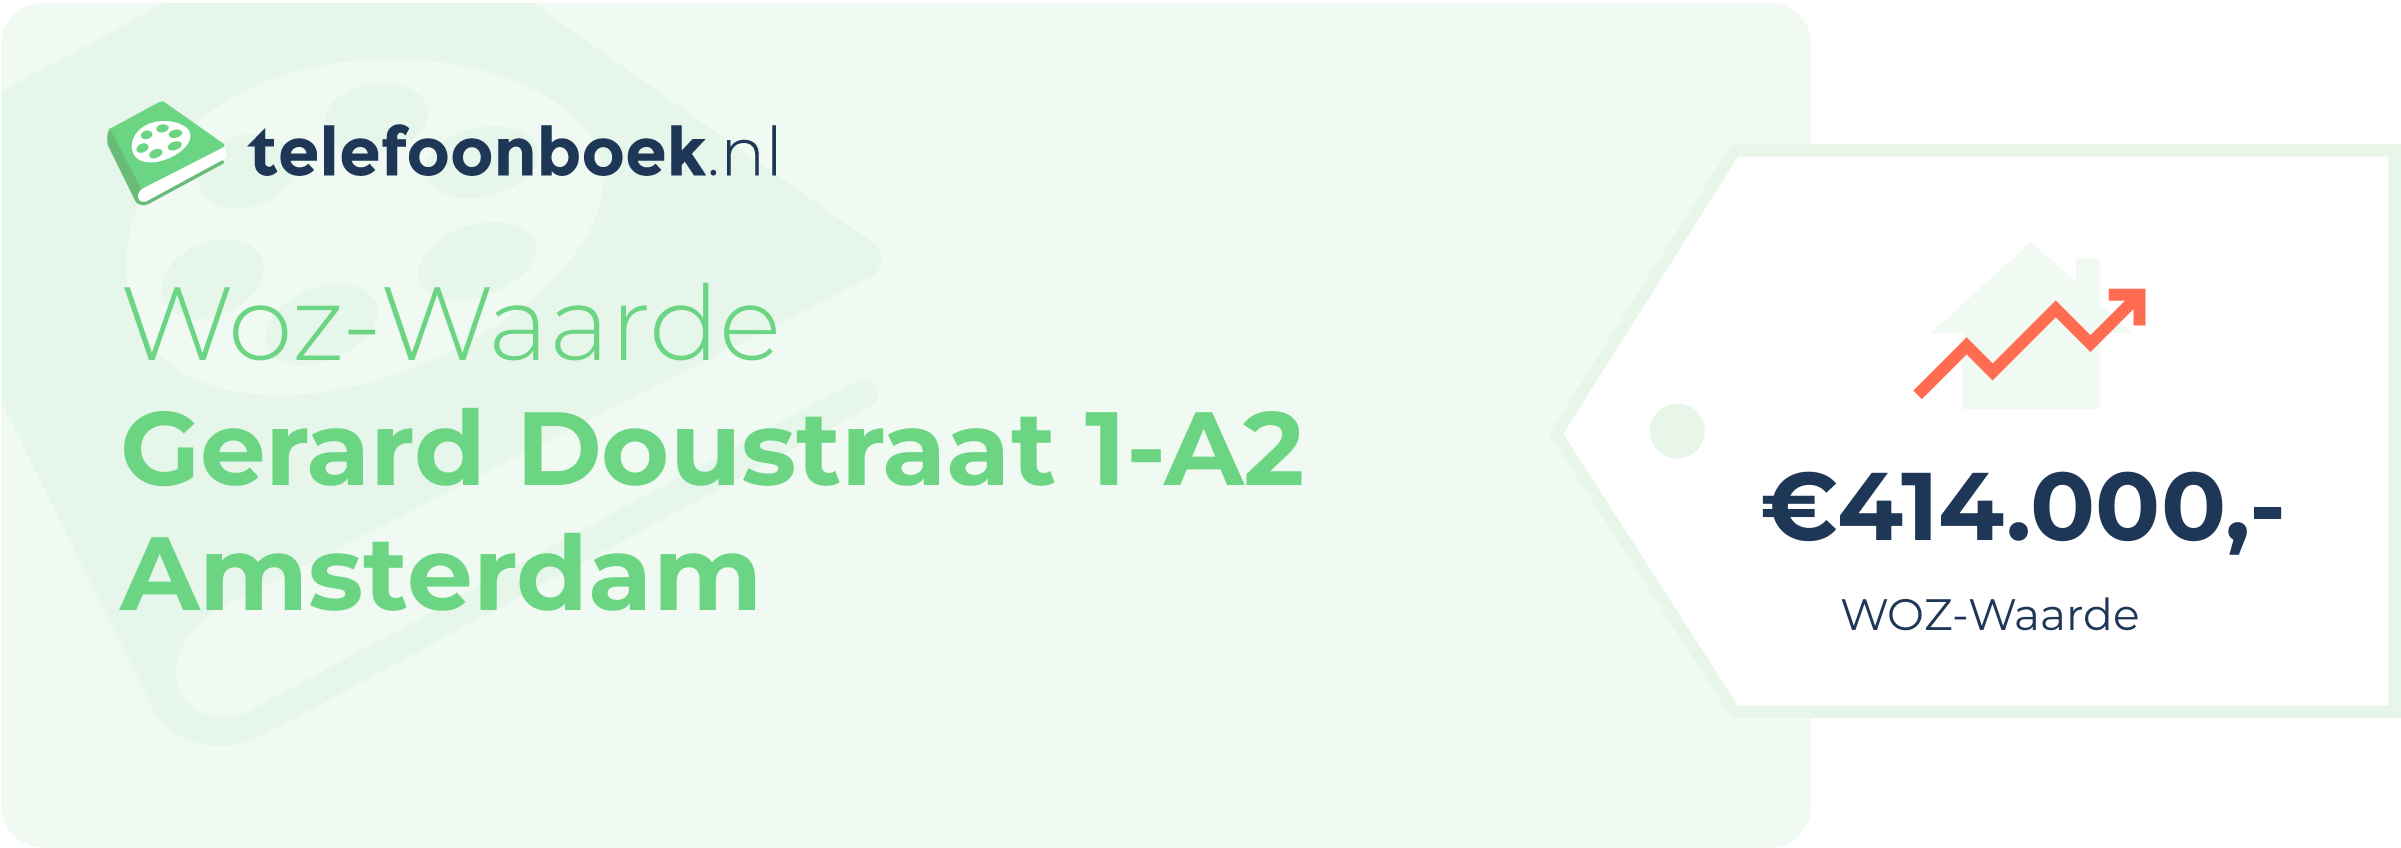 WOZ-waarde Gerard Doustraat 1-A2 Amsterdam